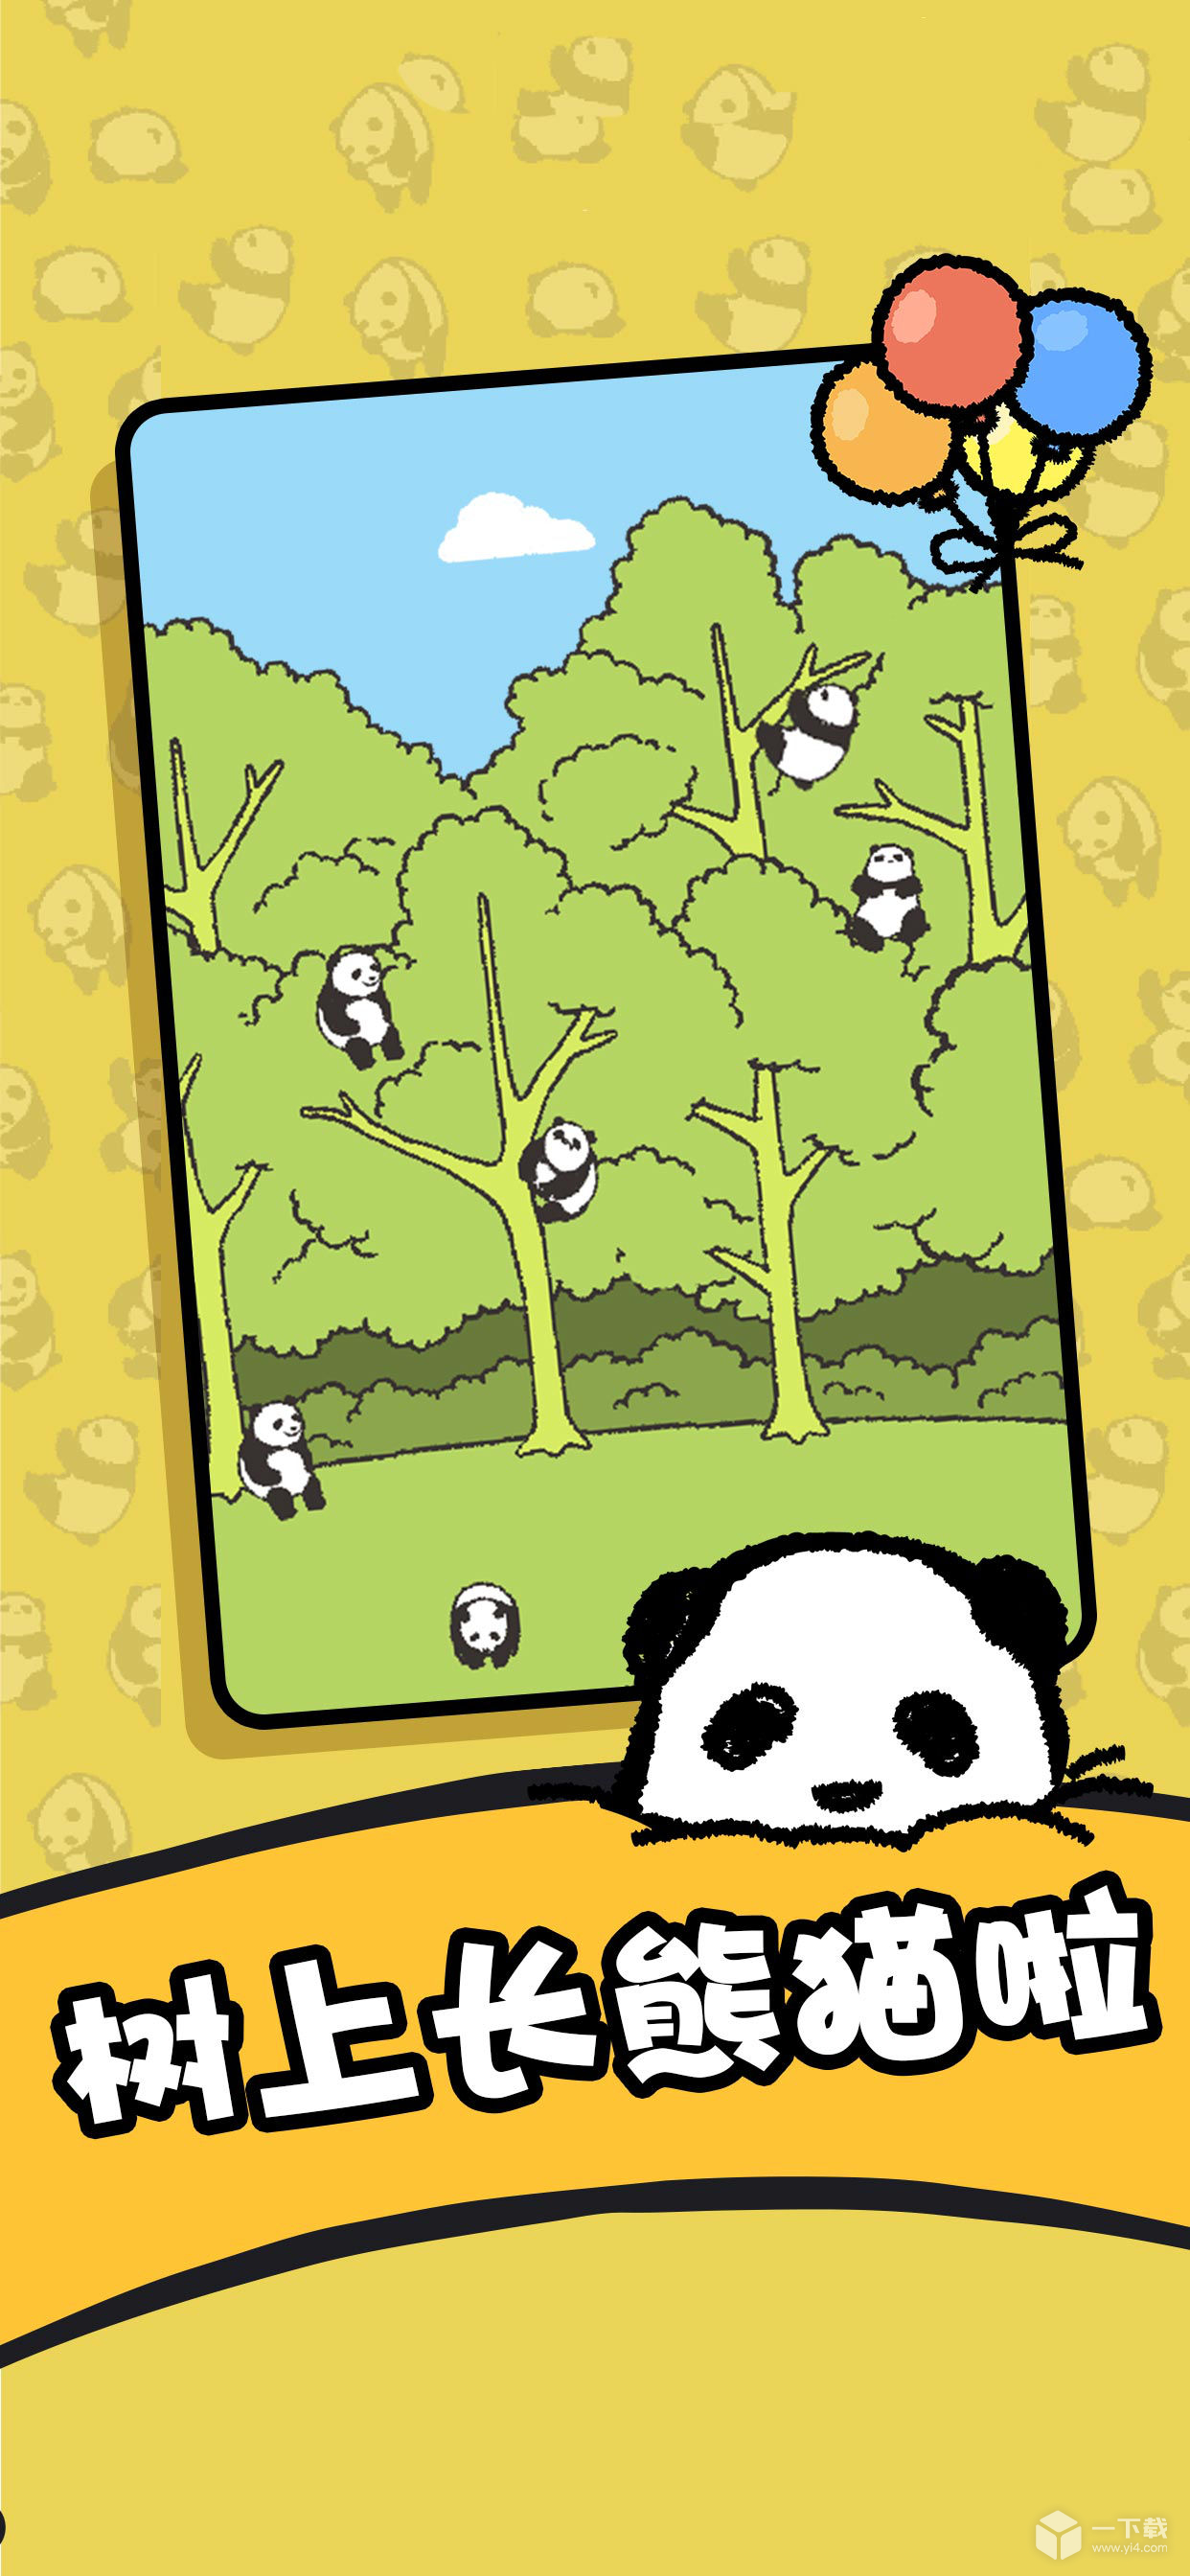 熊猫森林